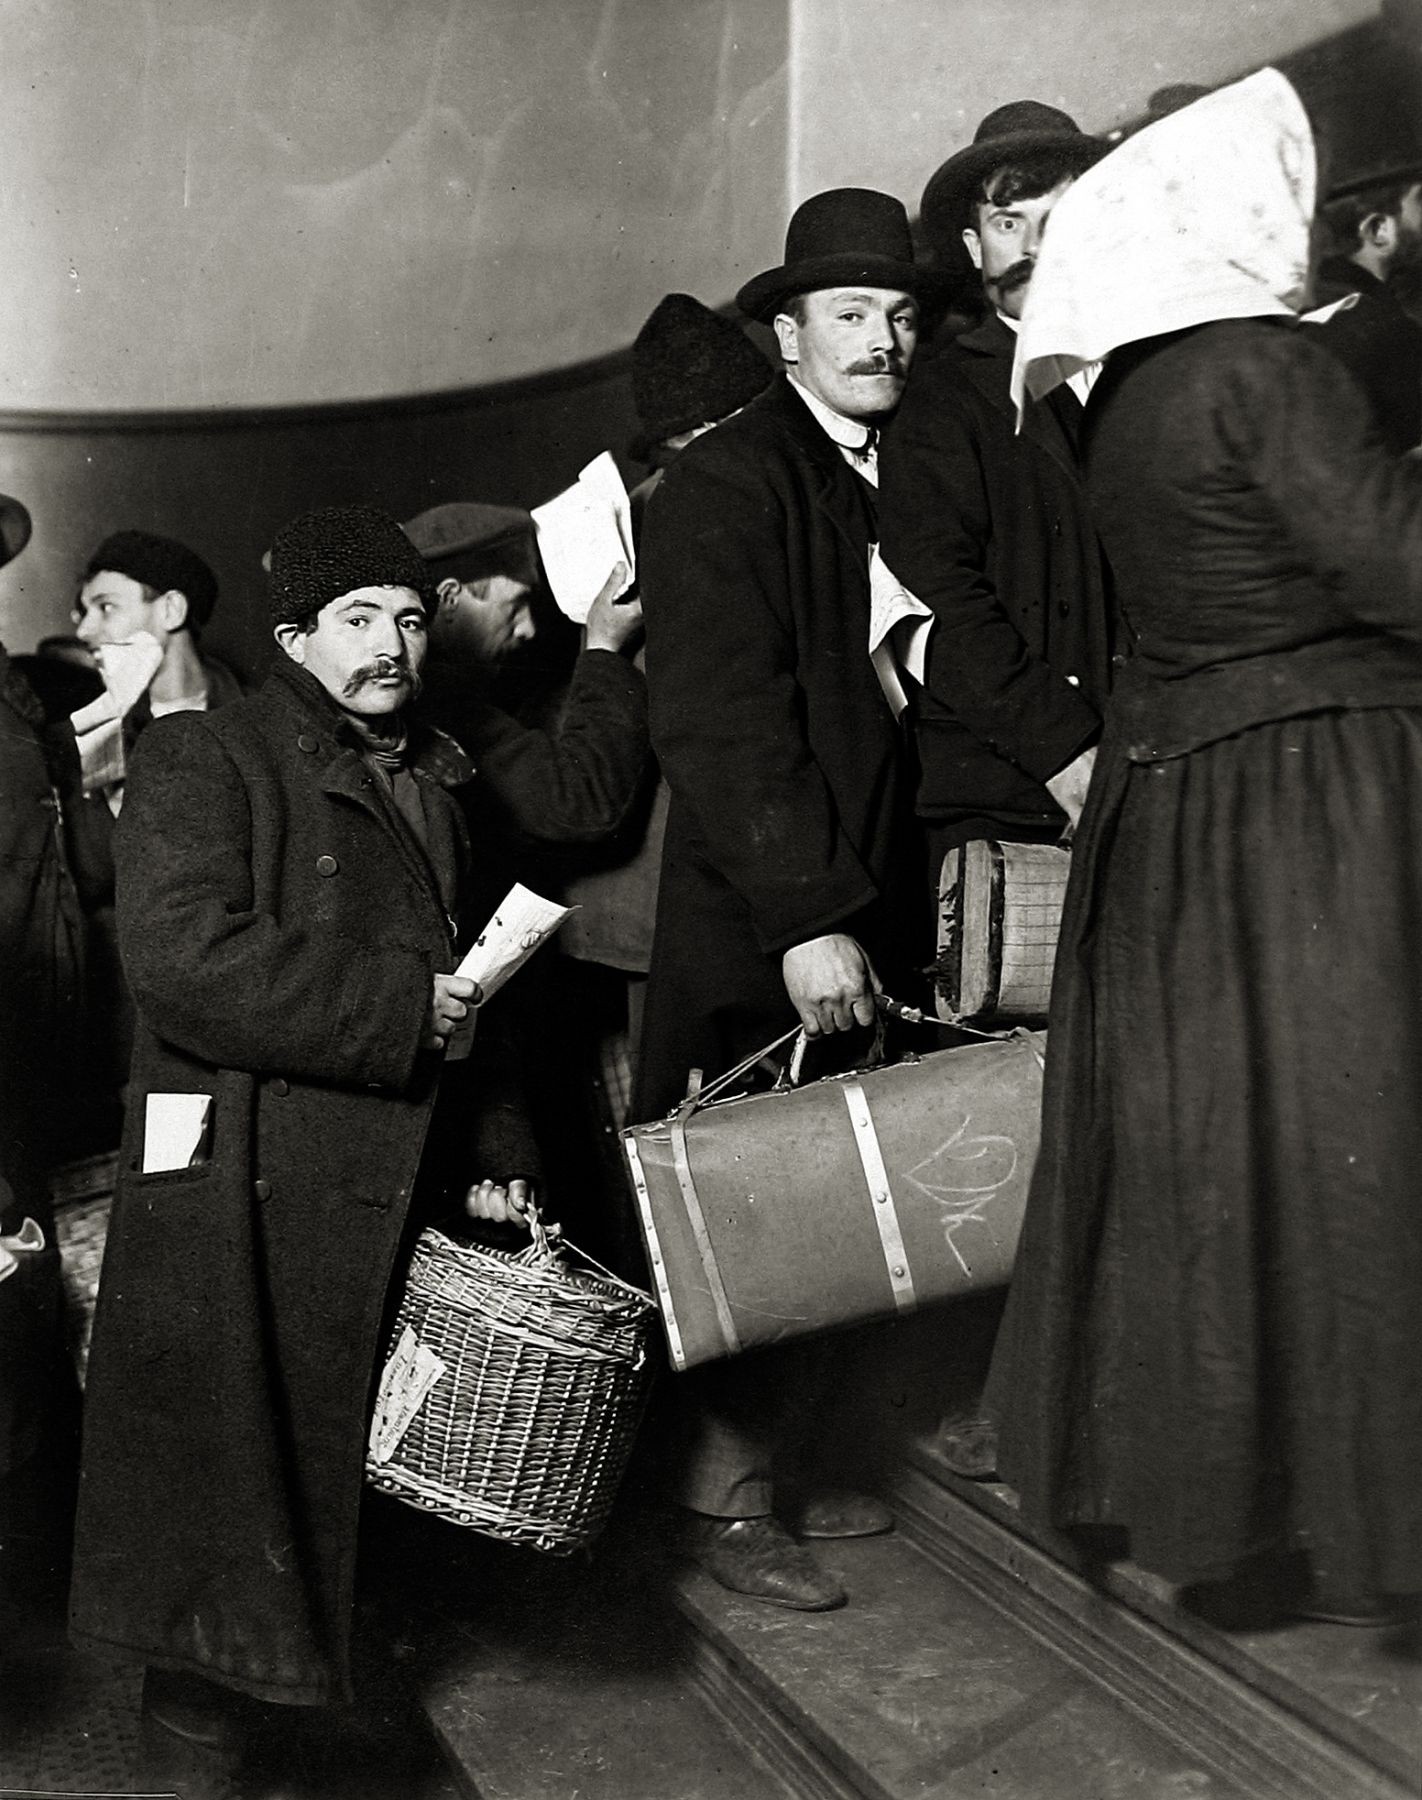 Прибывшие в Америку, 1905. Фотограф Льюис Хайн